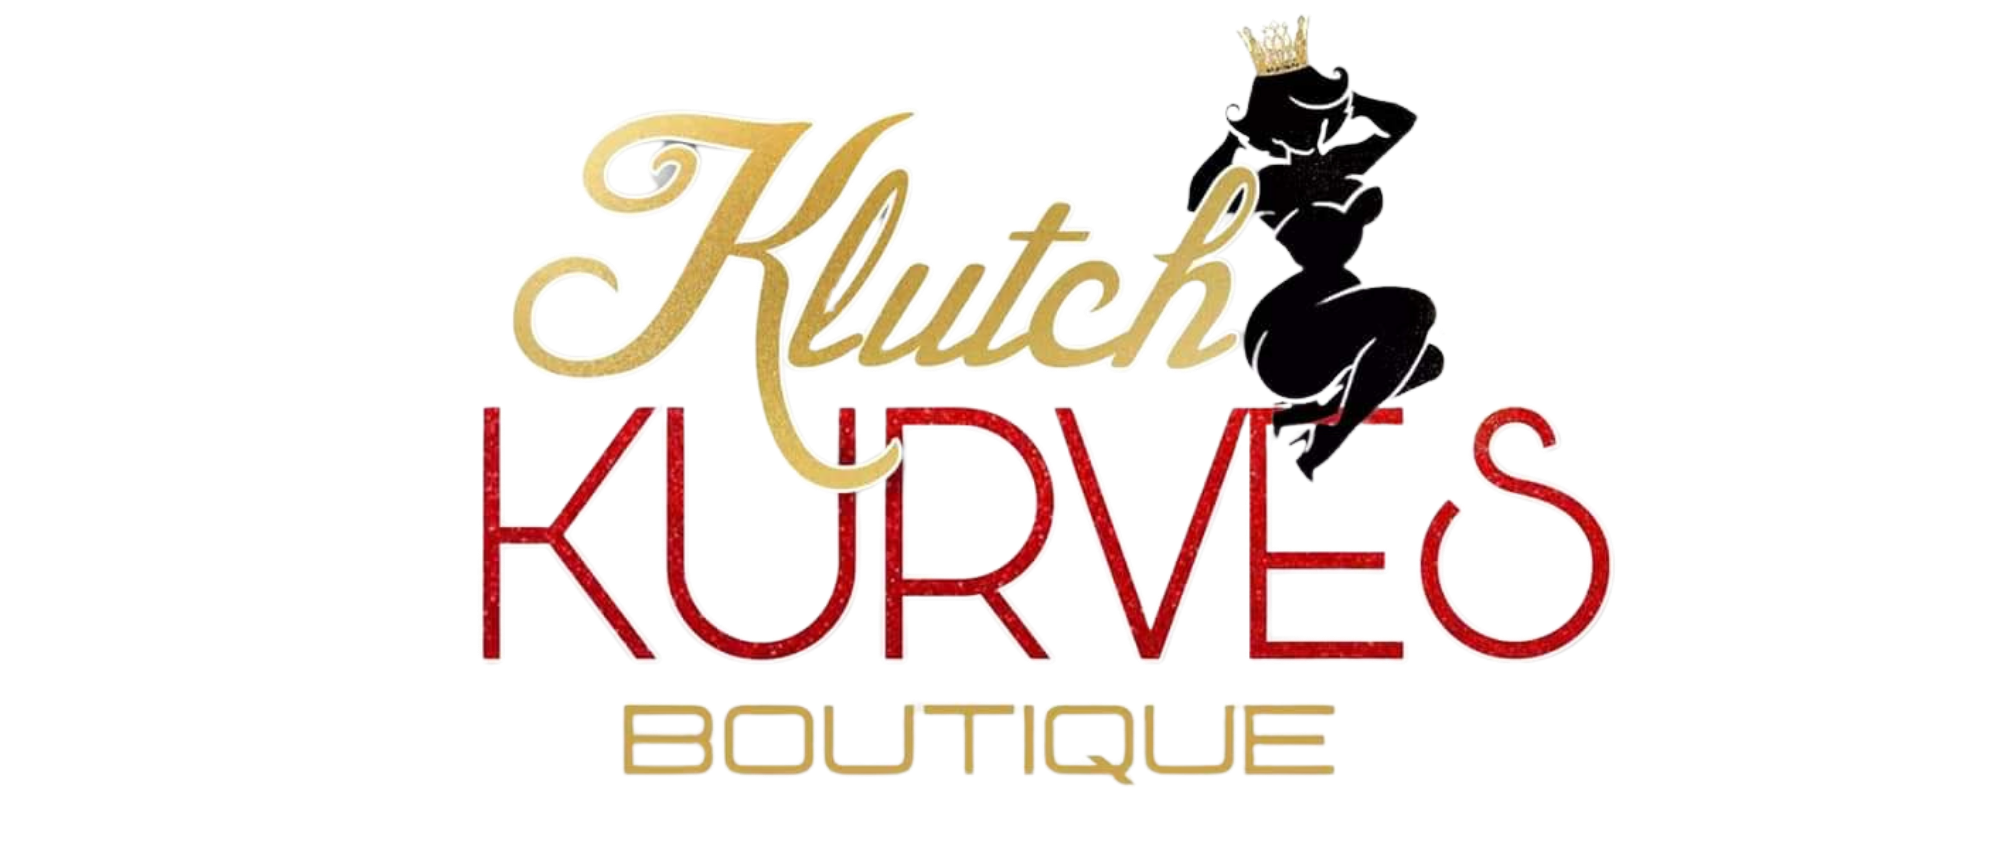 Klutch Kurves Boutique